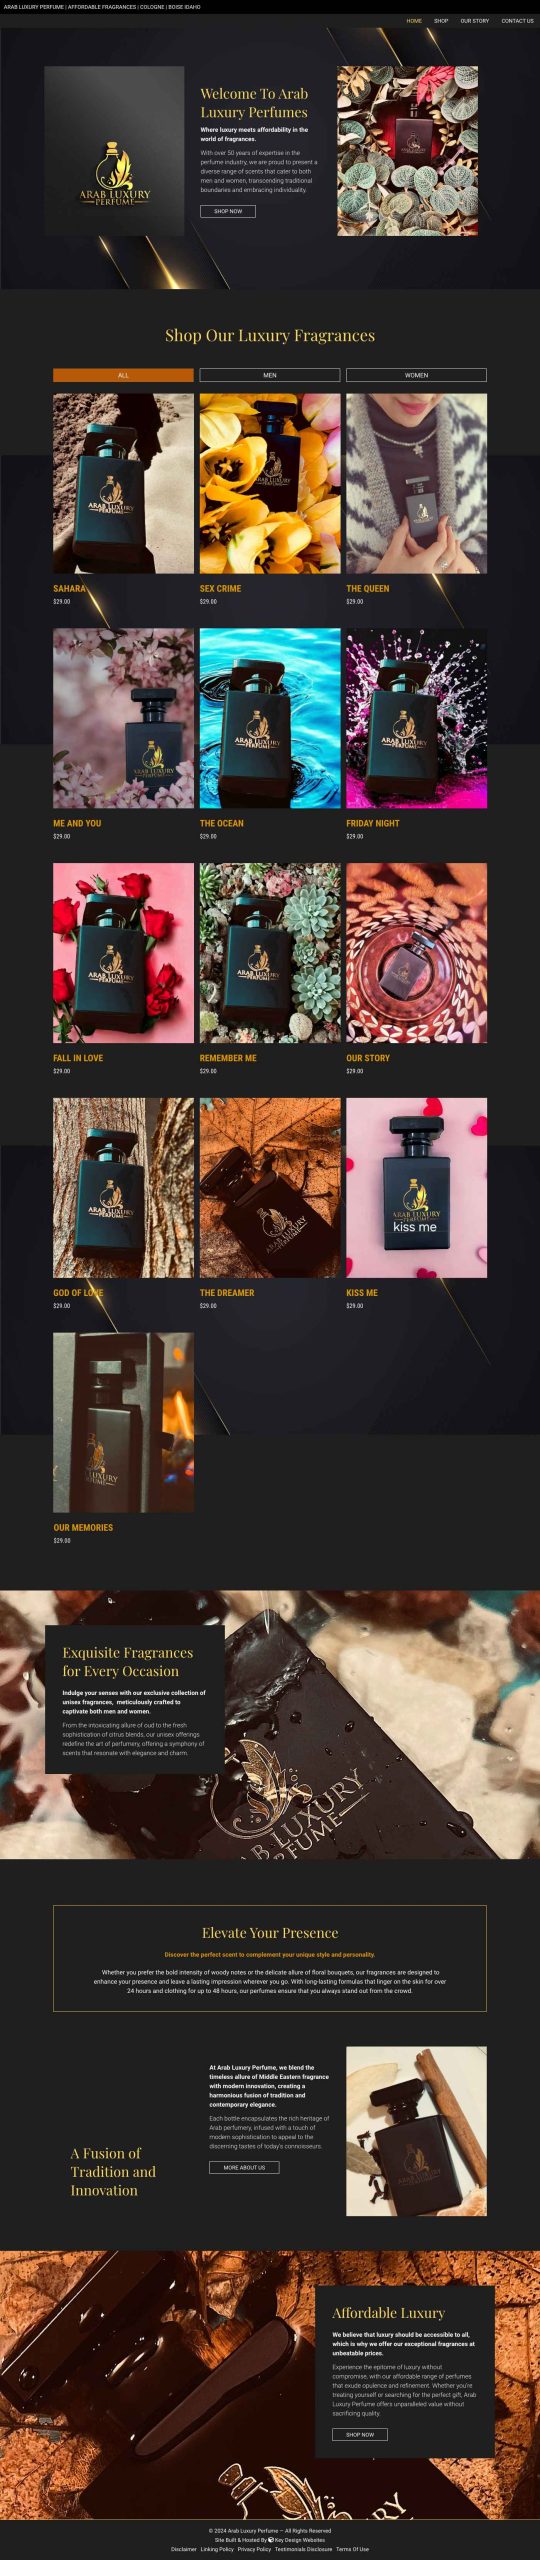 Screenshot of the Arab Luxury Perfume Website Homepage